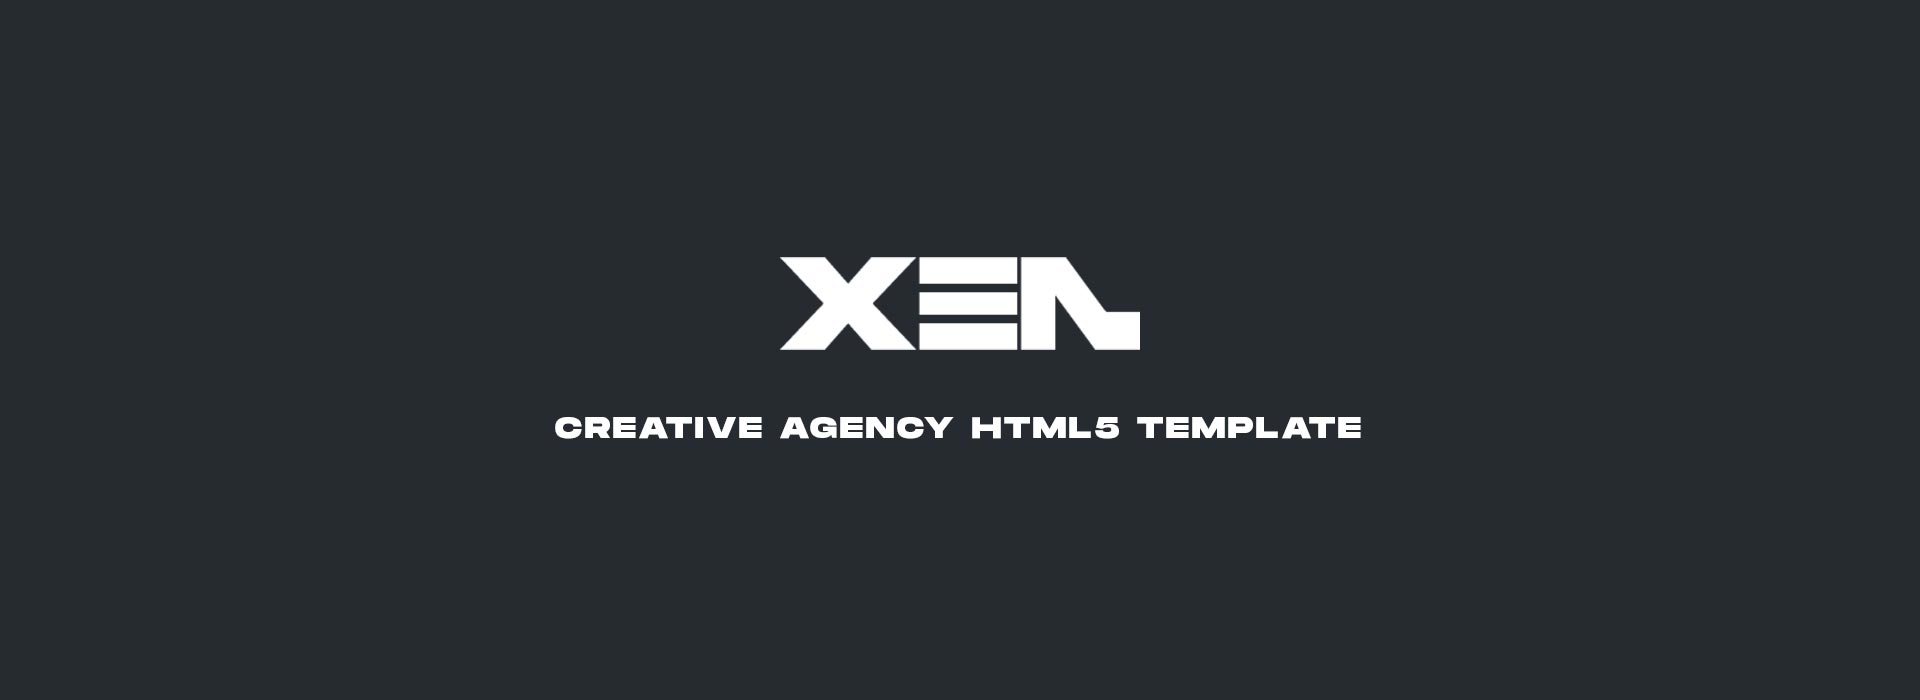 xen01 - XEN - Creative Agency HTML5 Template